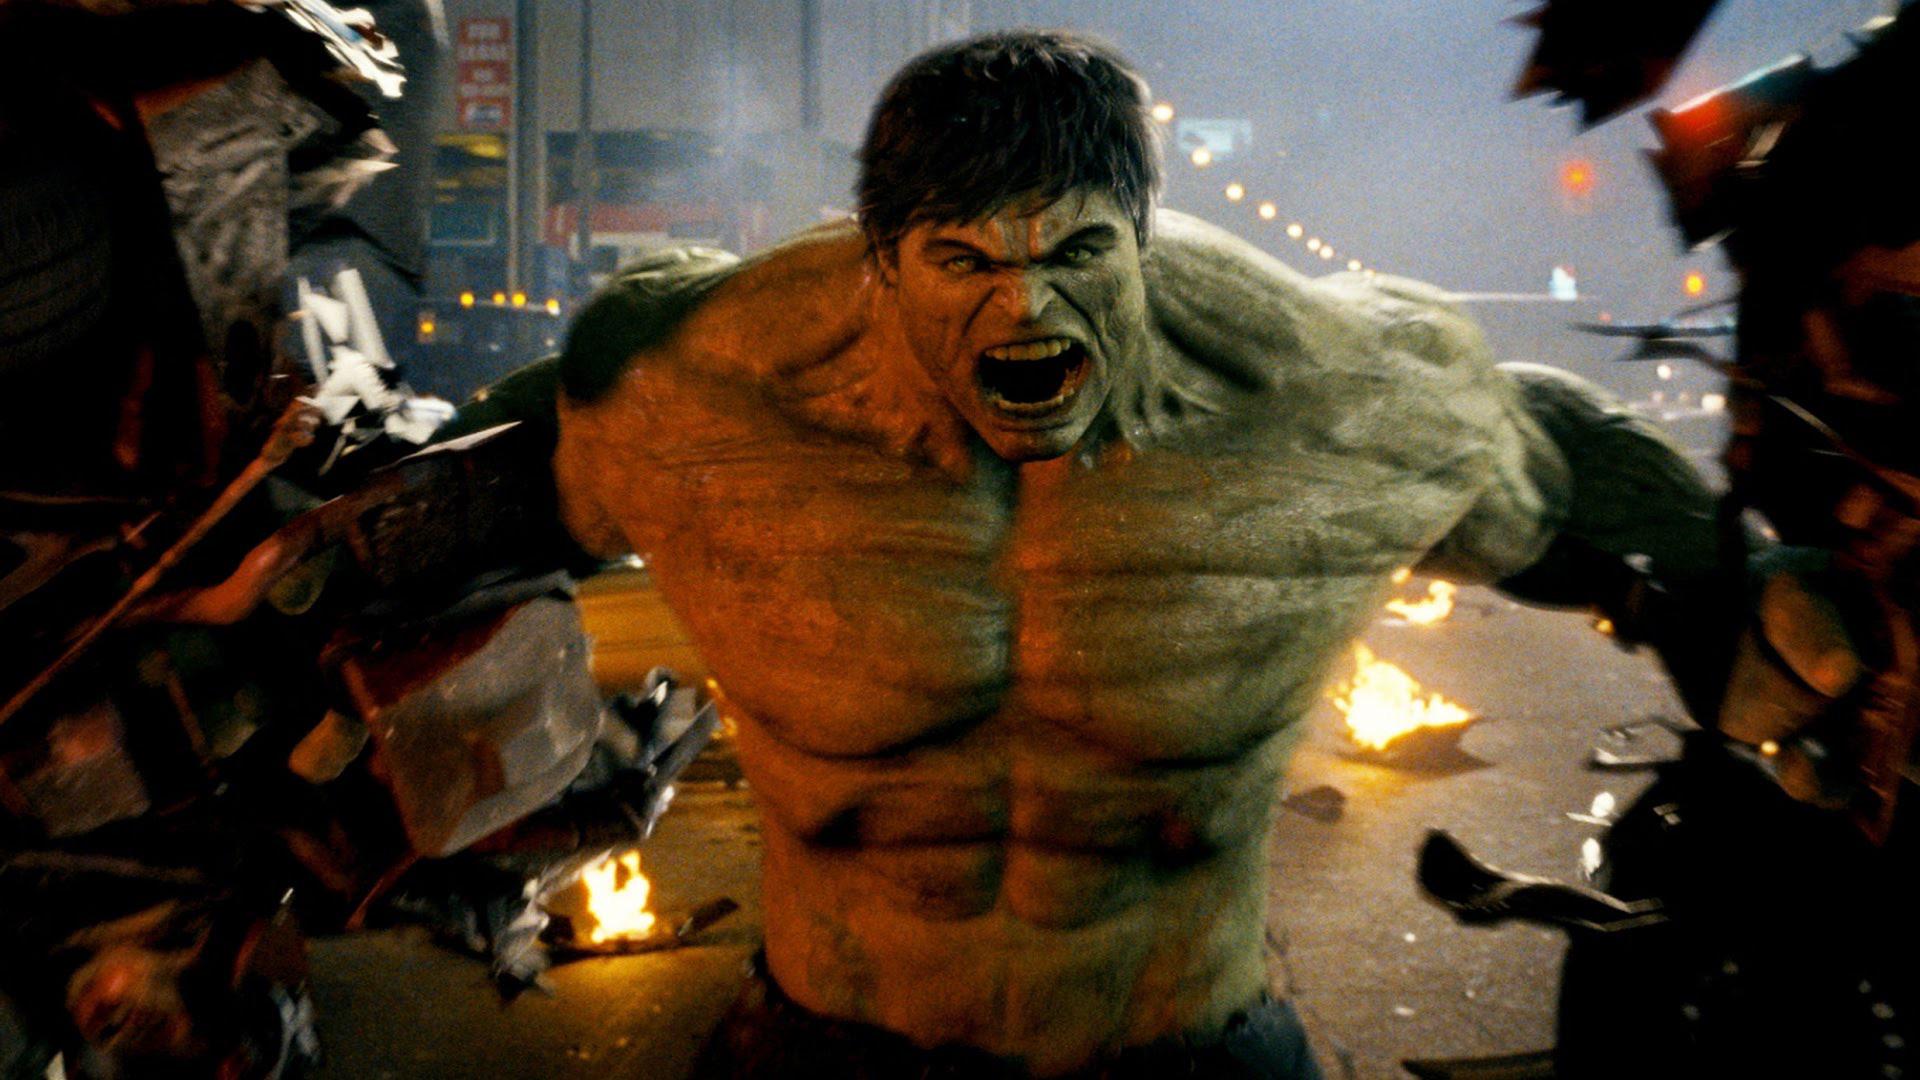 32. Incredible Hulk (2008)